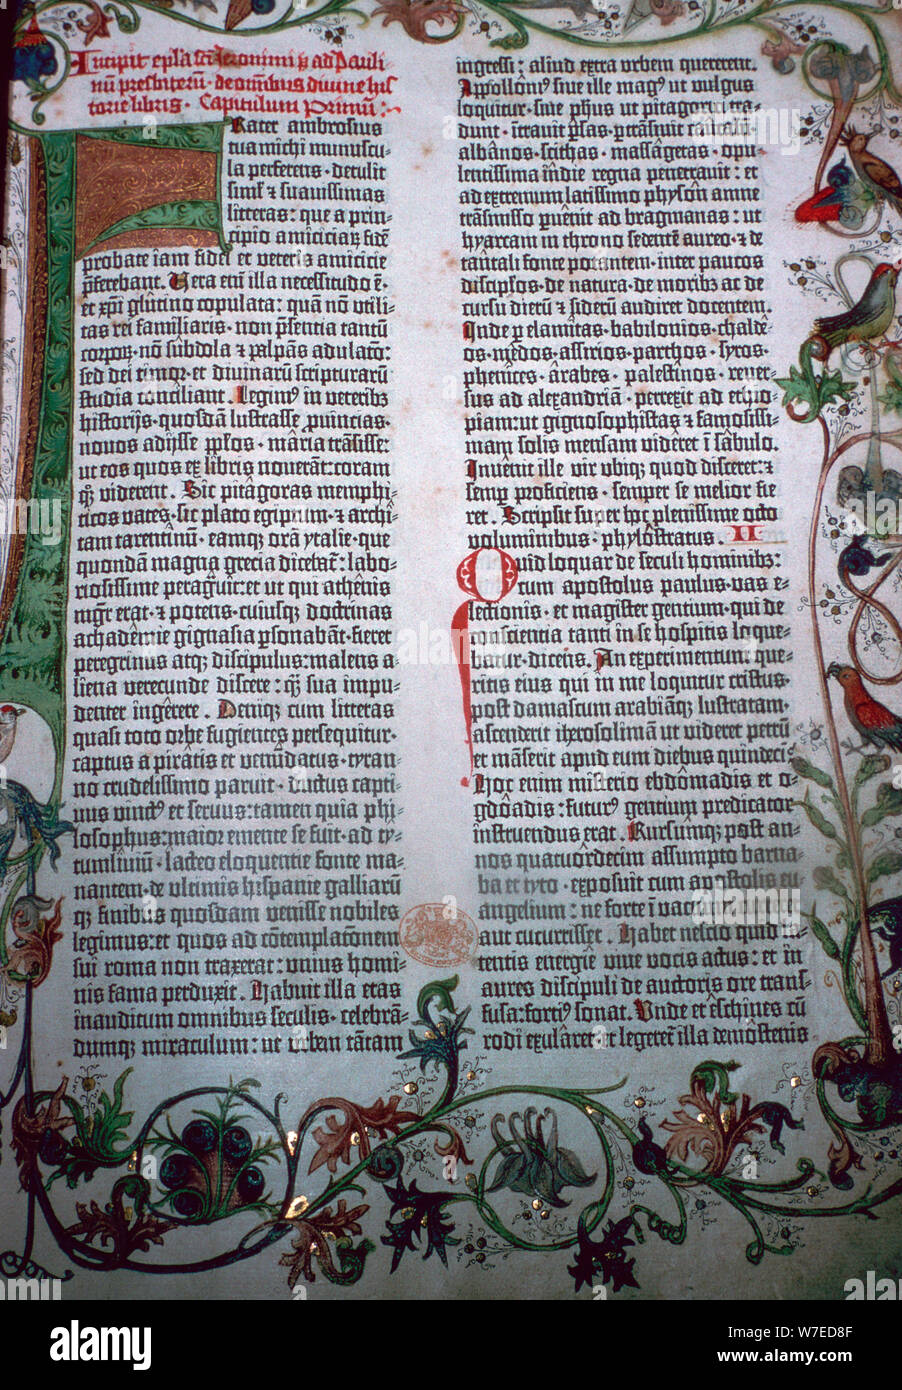 Eine Seite aus der Gutenberg Bibel, aus dem 15. Jahrhundert. Artist: Johannes Gutenberg Stockfoto